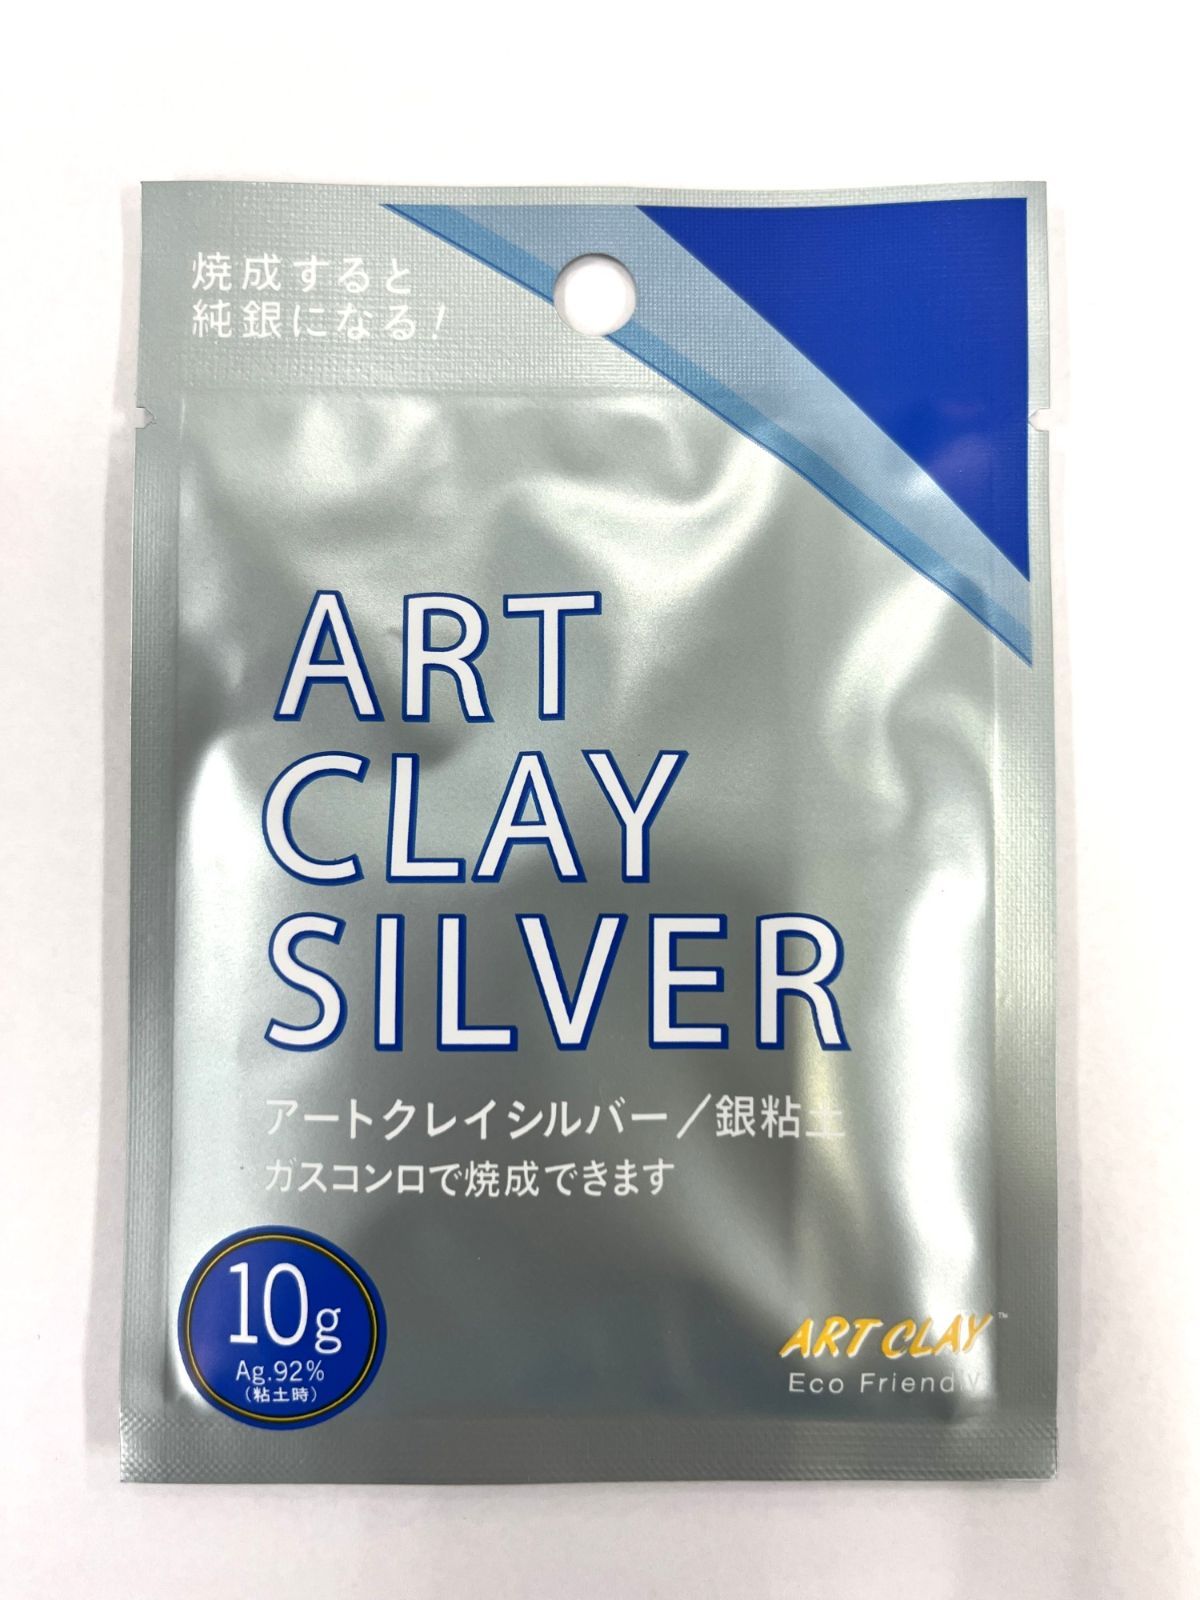 相田化学工業 アートクレイシルバー 10g A-0273 銀 粘土 2個セット